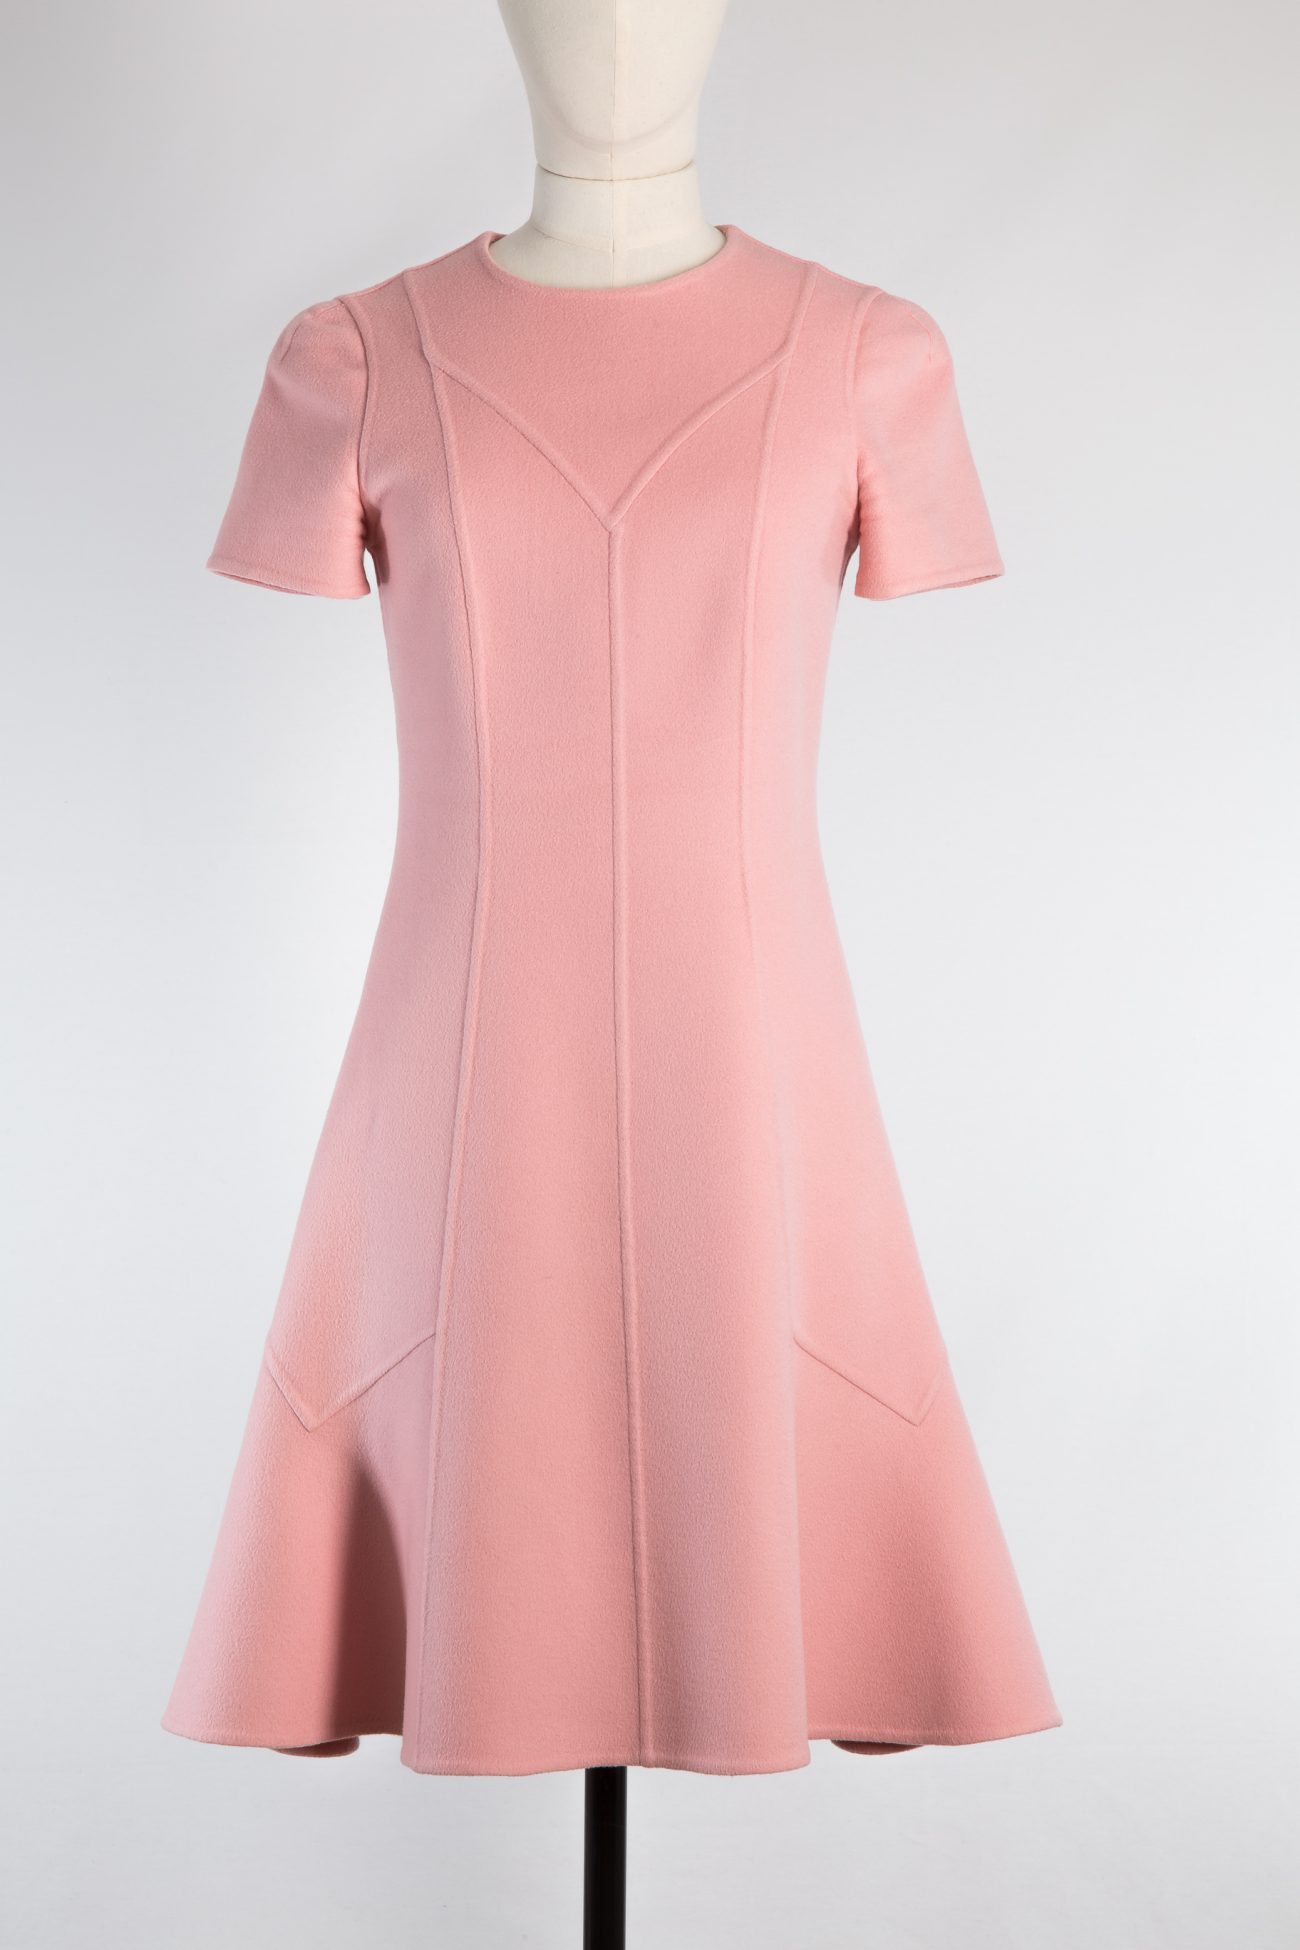 Pink Louis Vuitton Dress, Plus Size Fashionz